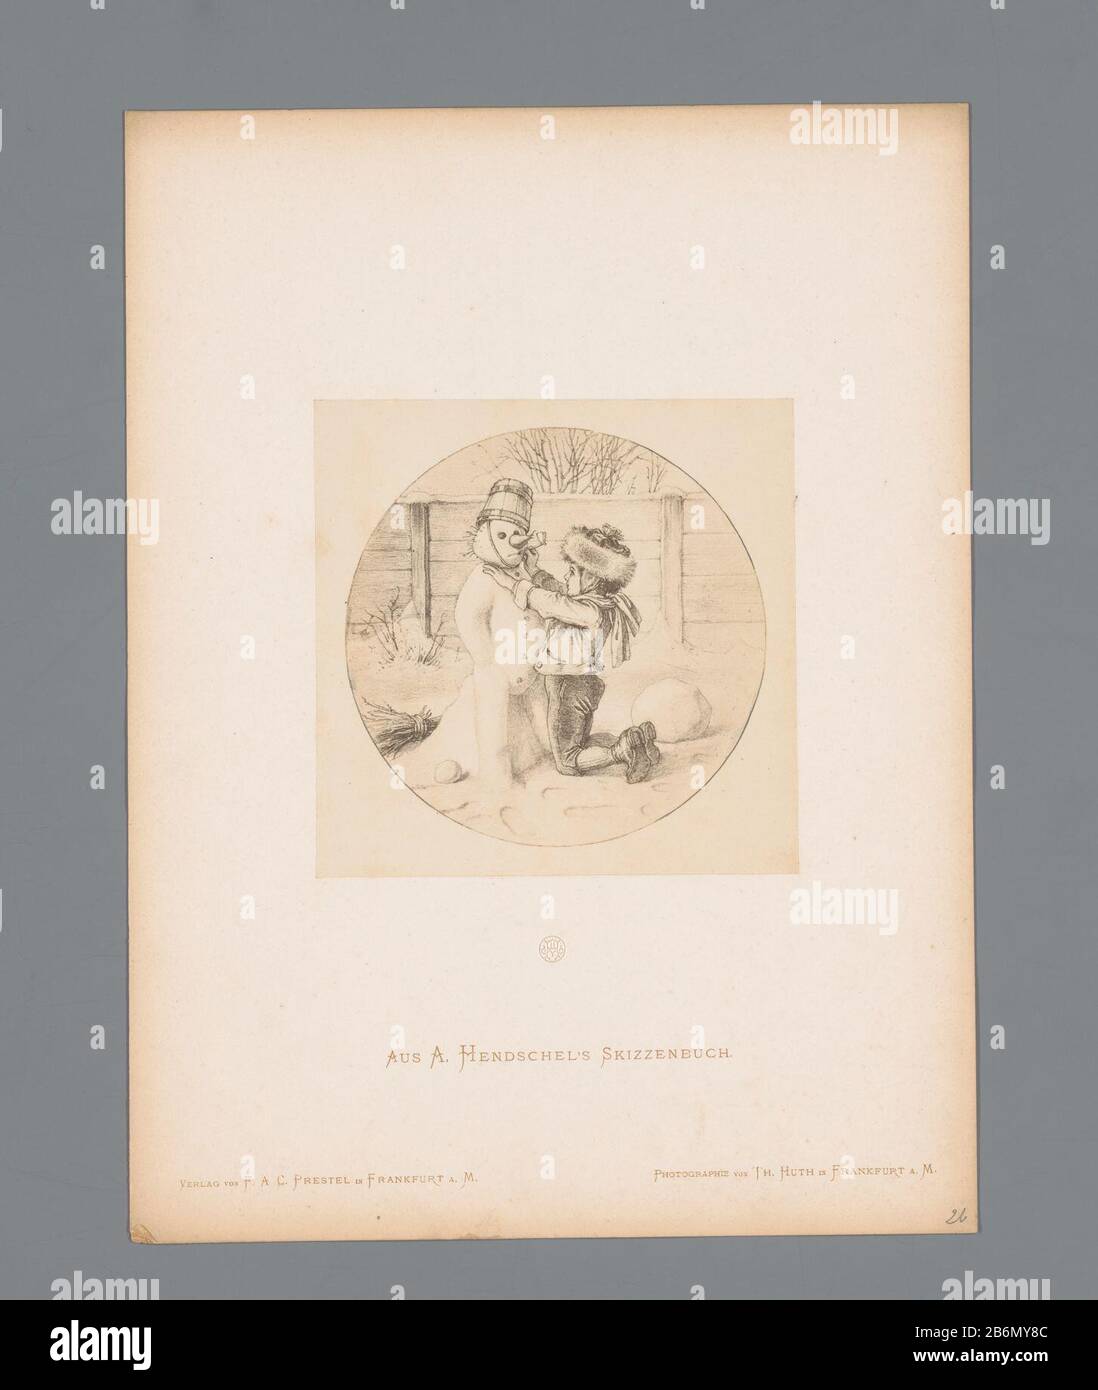 Regeren Melodramatisch Blauwdruk Fotoreproductie van een schets van een schoenmaker en een vogel, door  Albert Hendschel Aus A Hendschel's Skizzenbuch (serietitel op object) This  photo is part of a folder with 50 images on 48